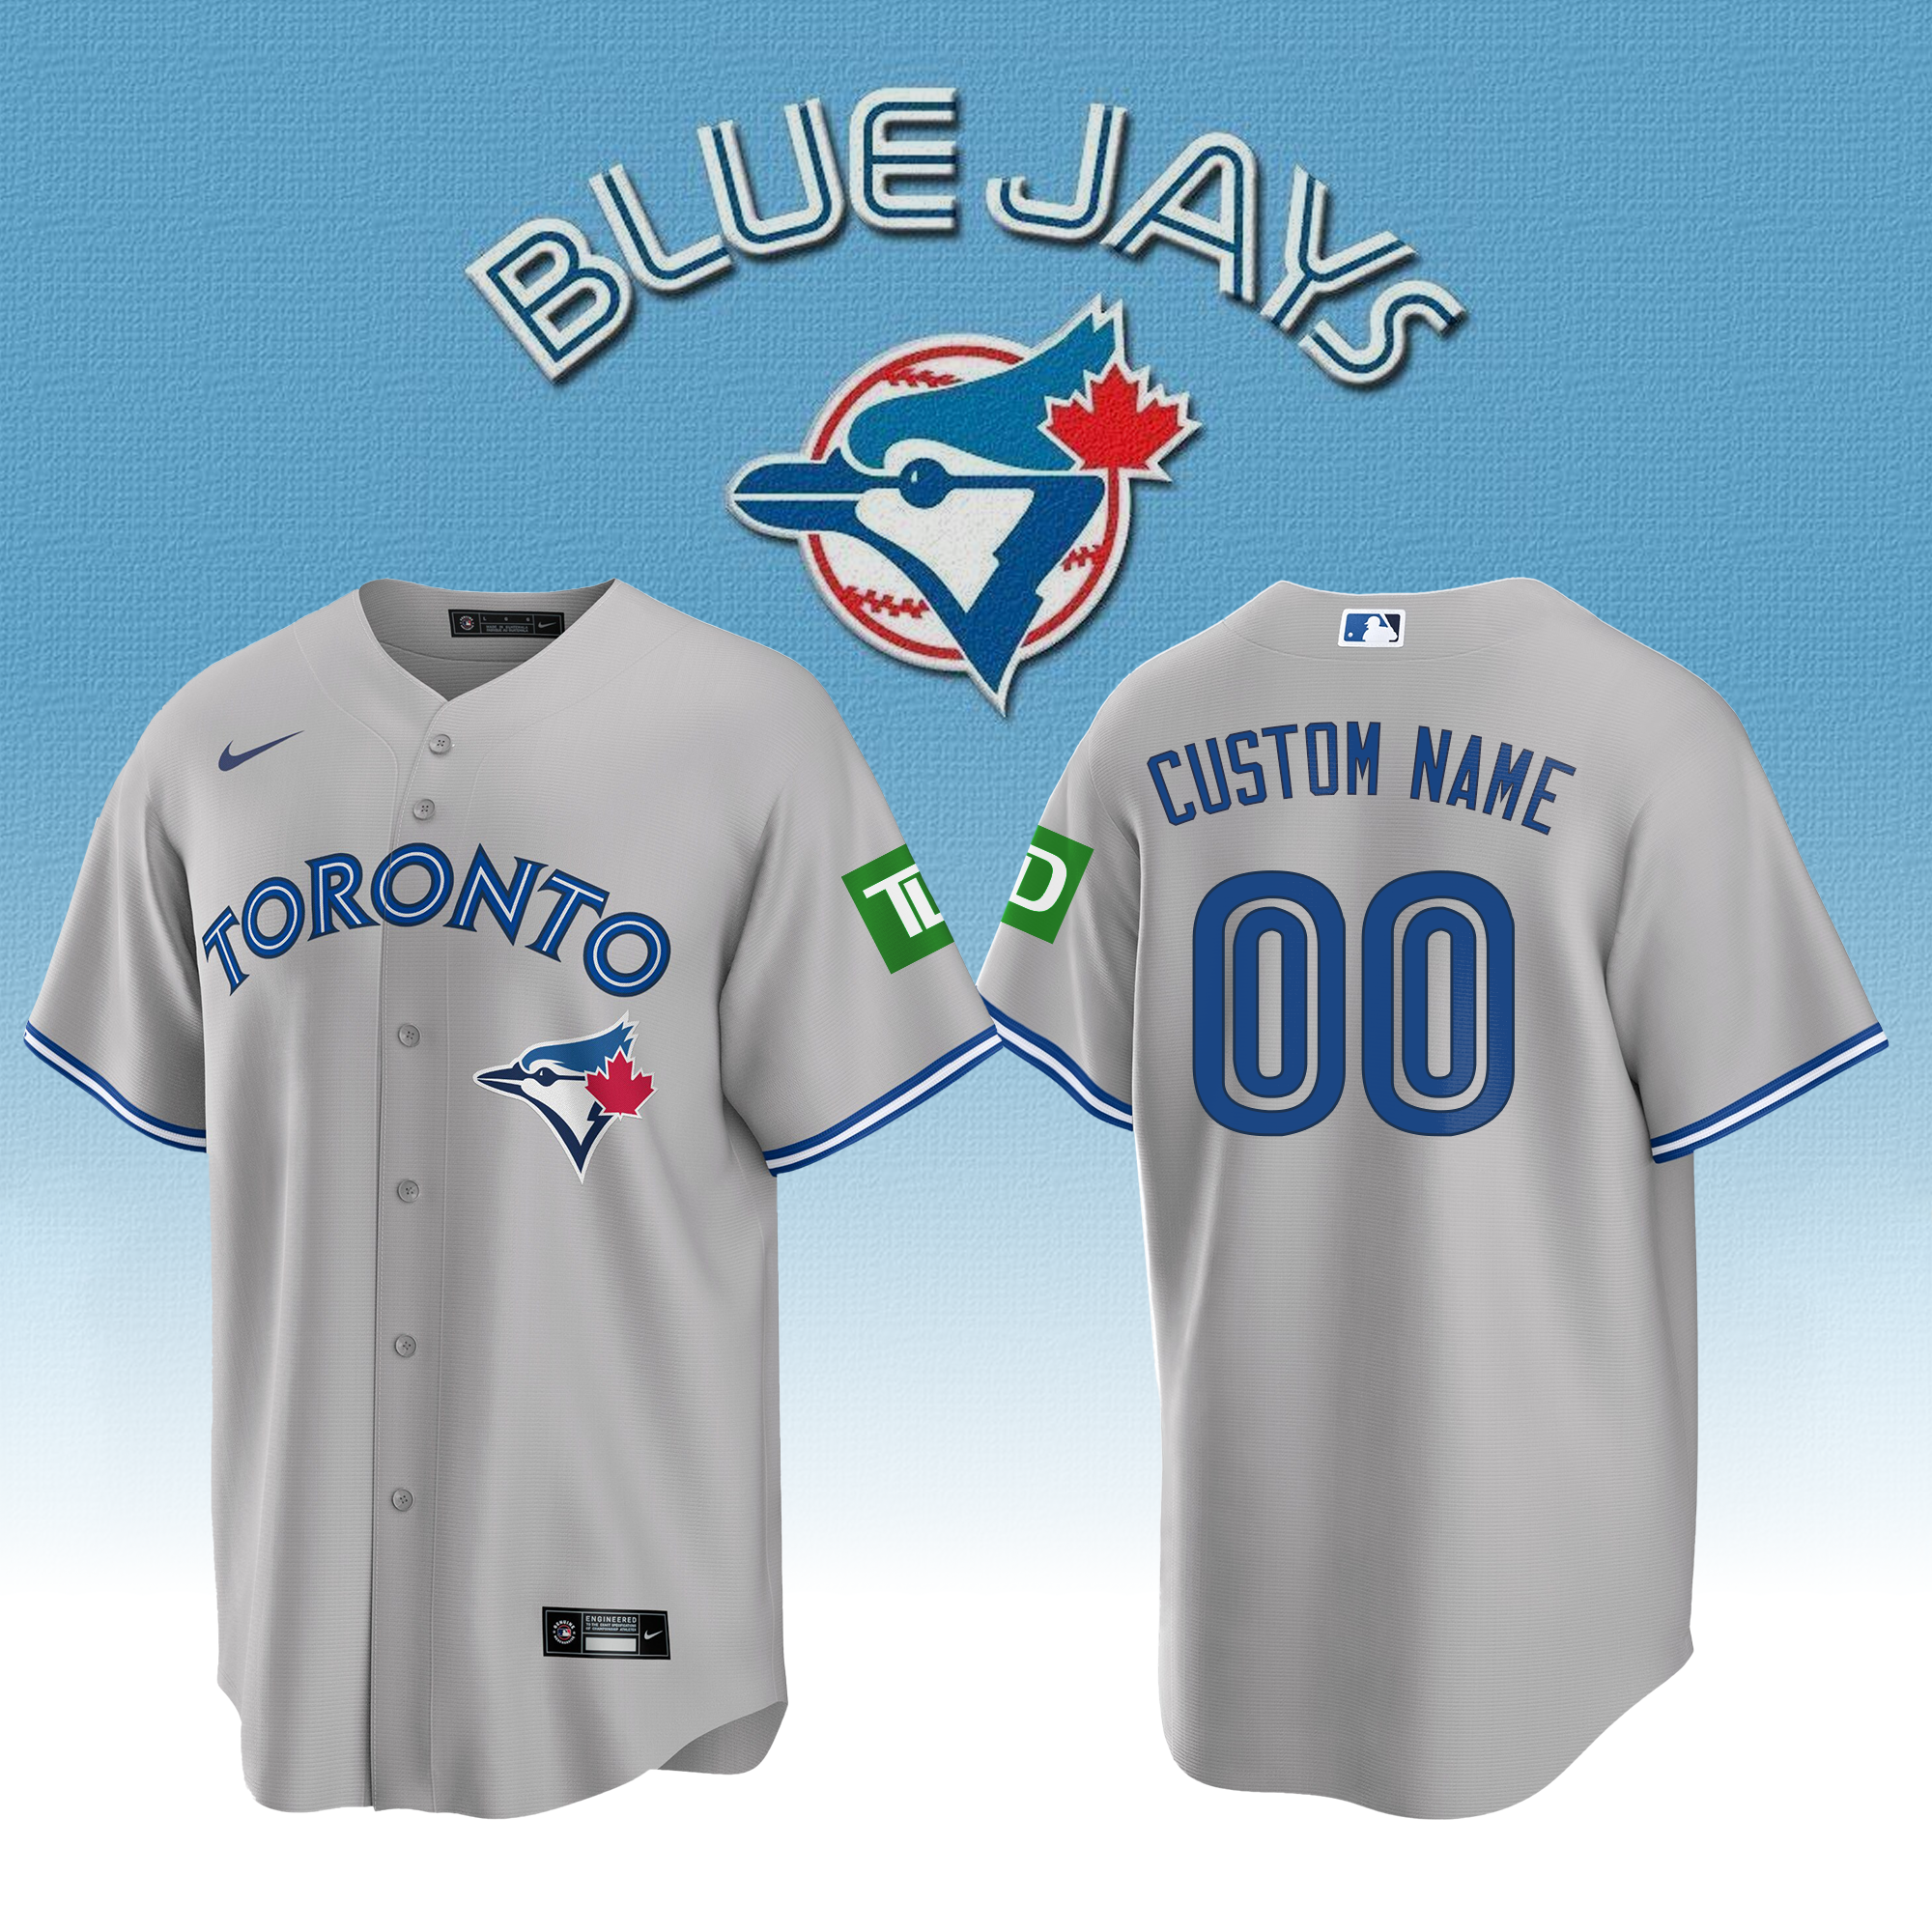 _.Vladimir Guerrero Jr. Toronto Blue Jays MLB Home Run Derby 2023 Jersey -  BTF Store